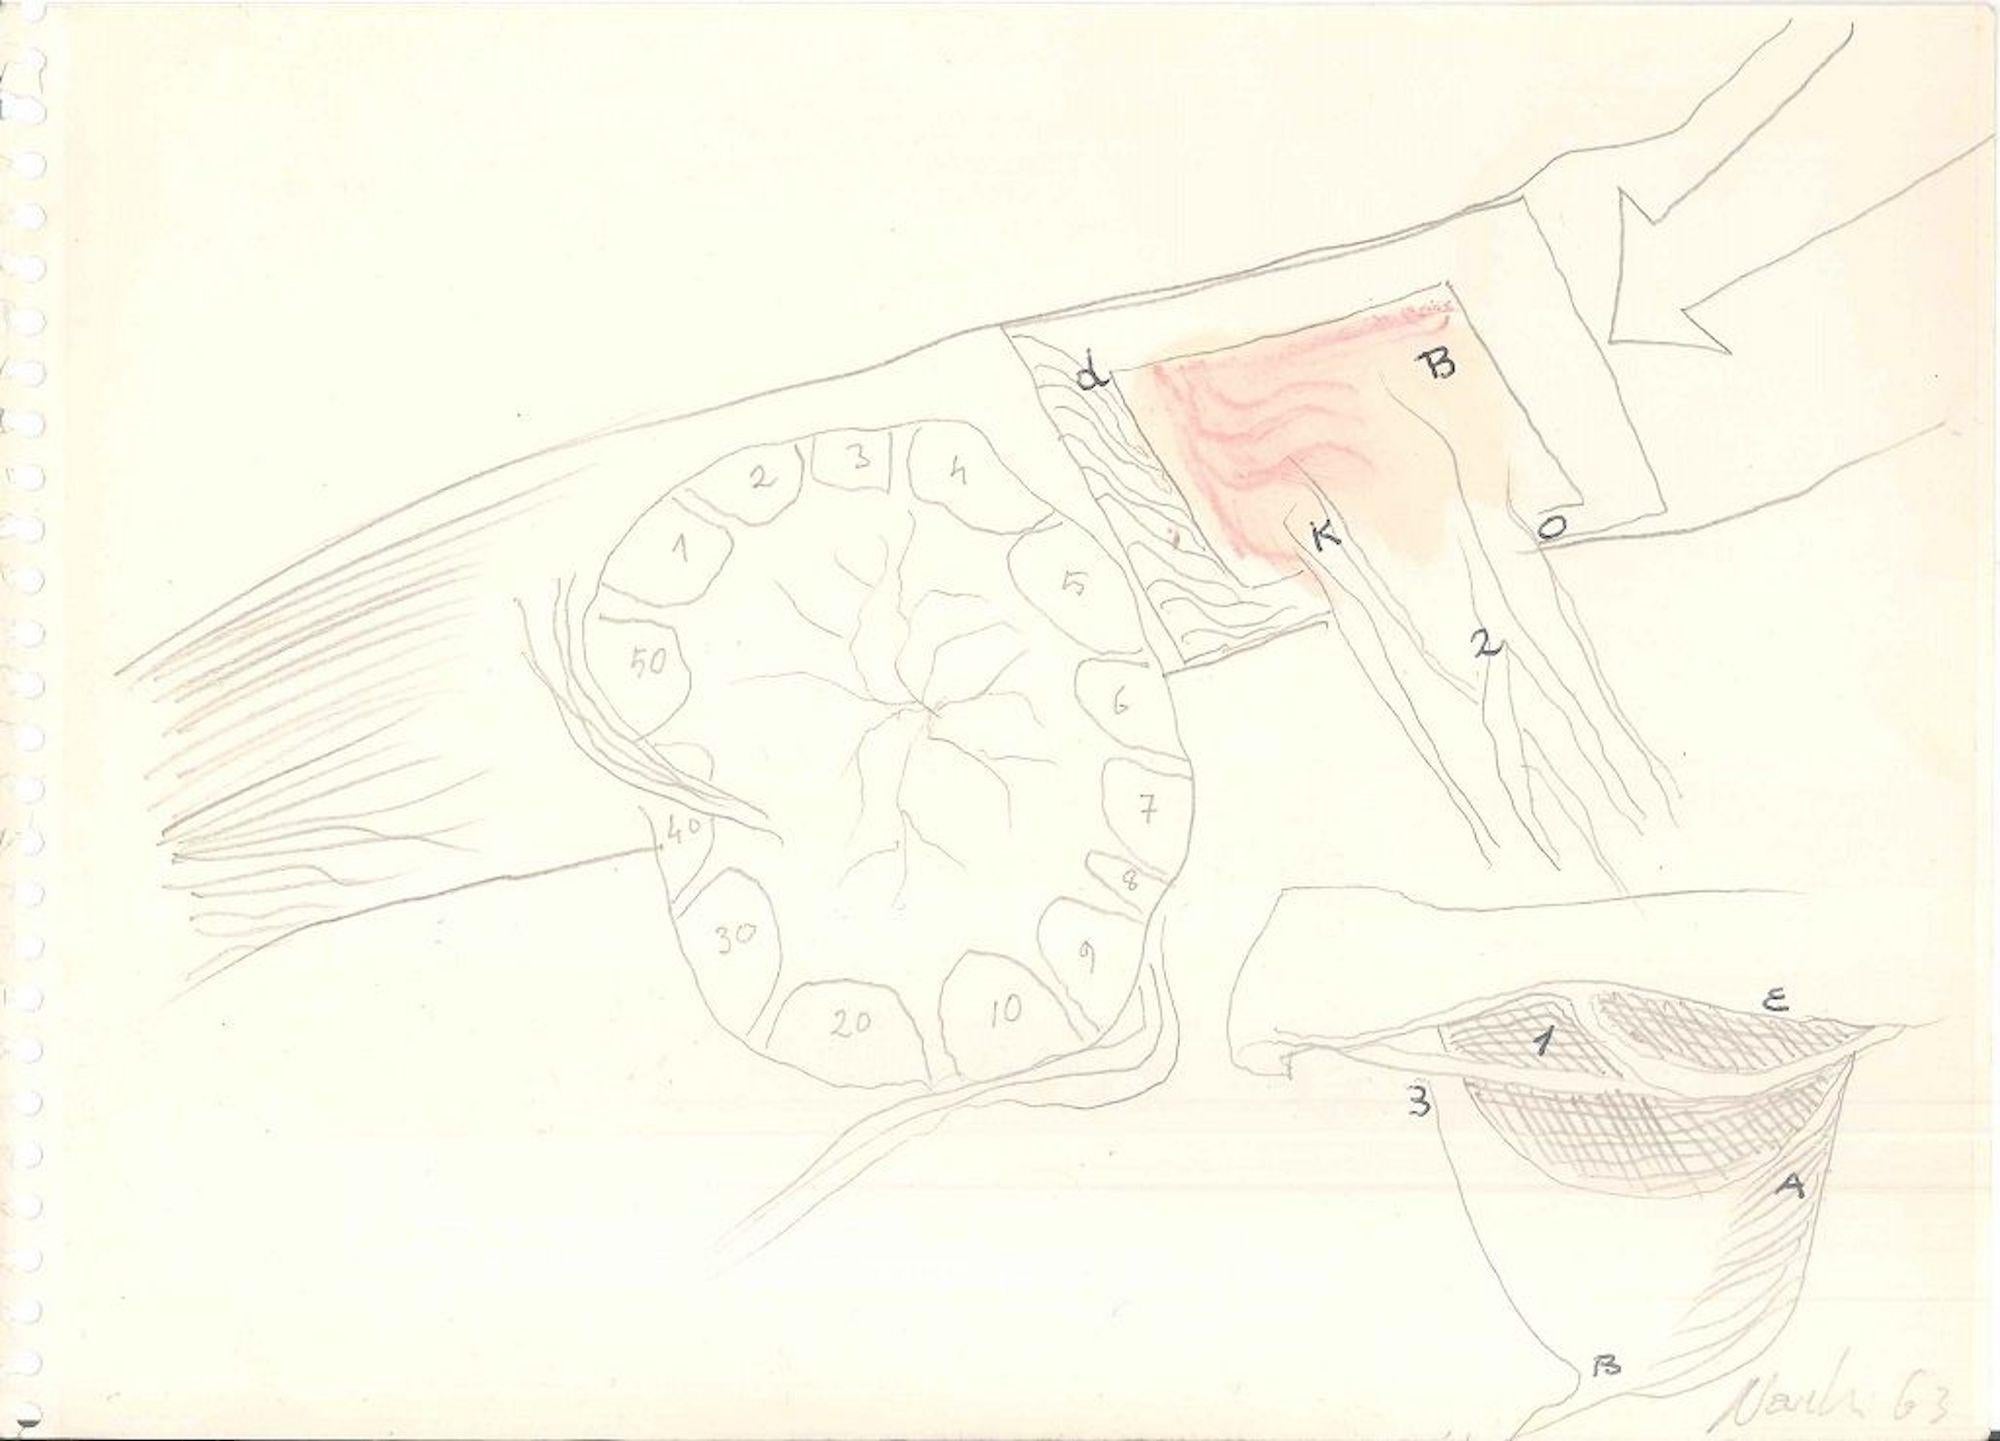 Composizione, 1963 est un intéressant dessin original (techniques mixtes : crayon, pastel, encre de Chine, aquarelle) de l'artiste italien informel Gastone Novelli.

Signé et daté au crayon au recto, dans la marge inférieure droite "Novelli